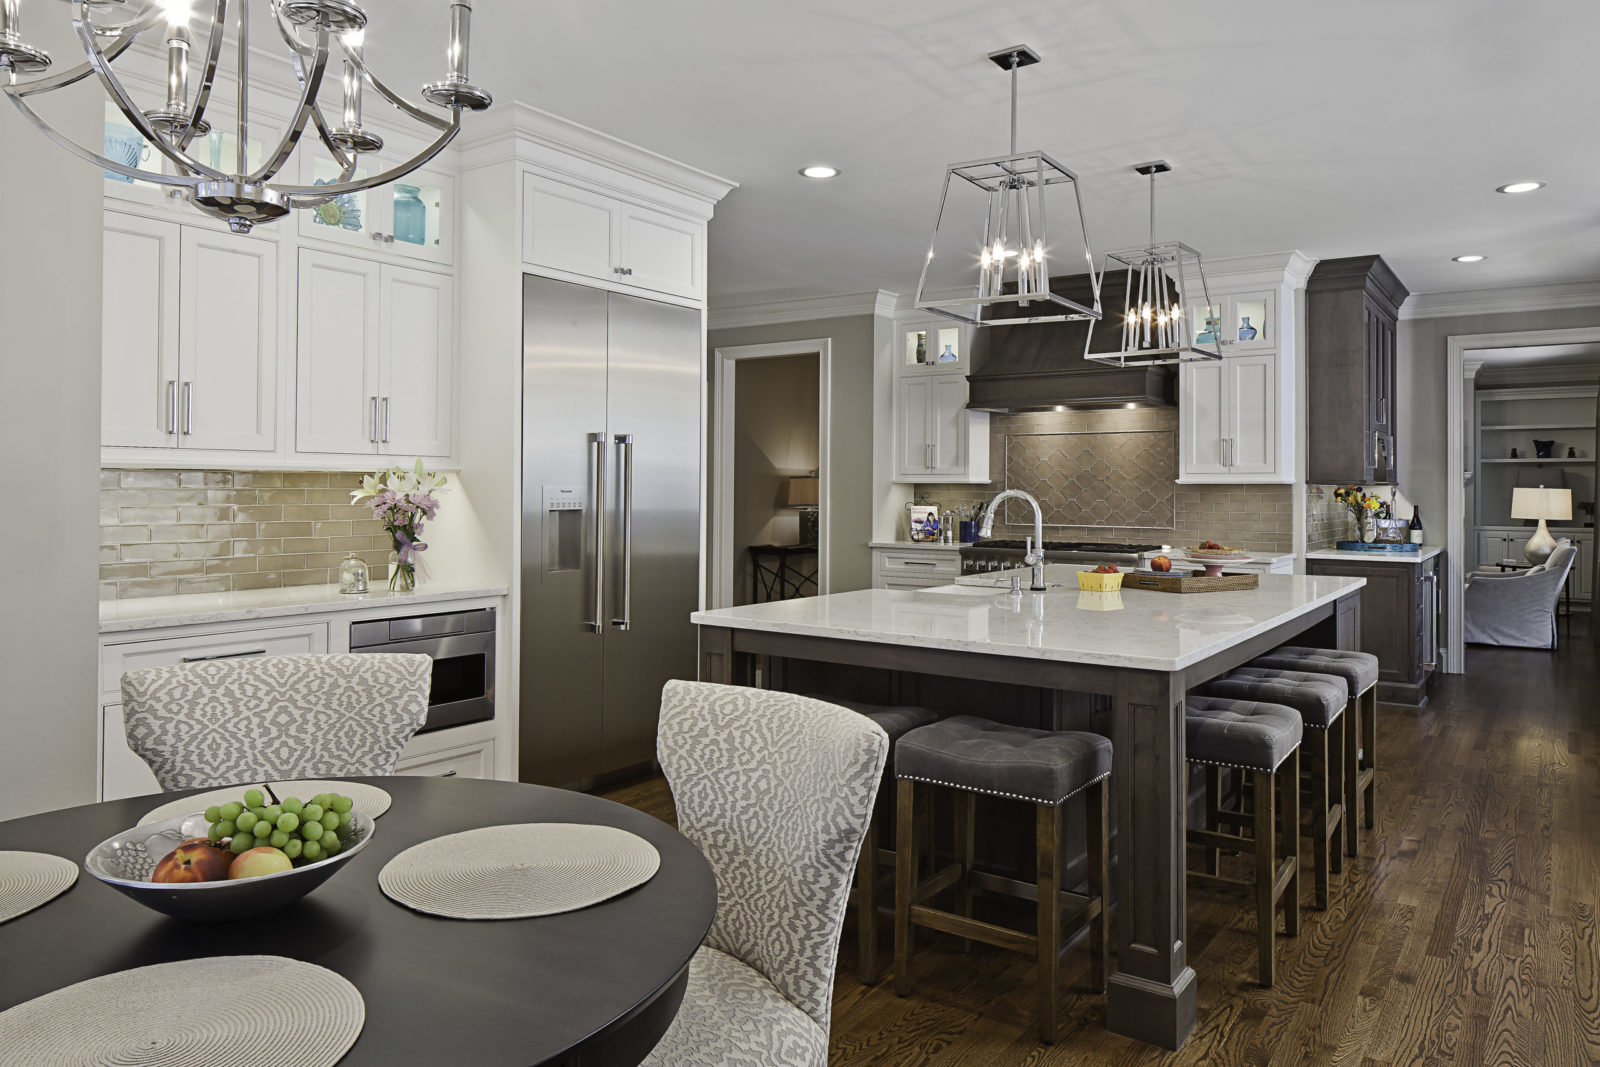 designer-kitchen-gray-and-white-kitchen-remodel